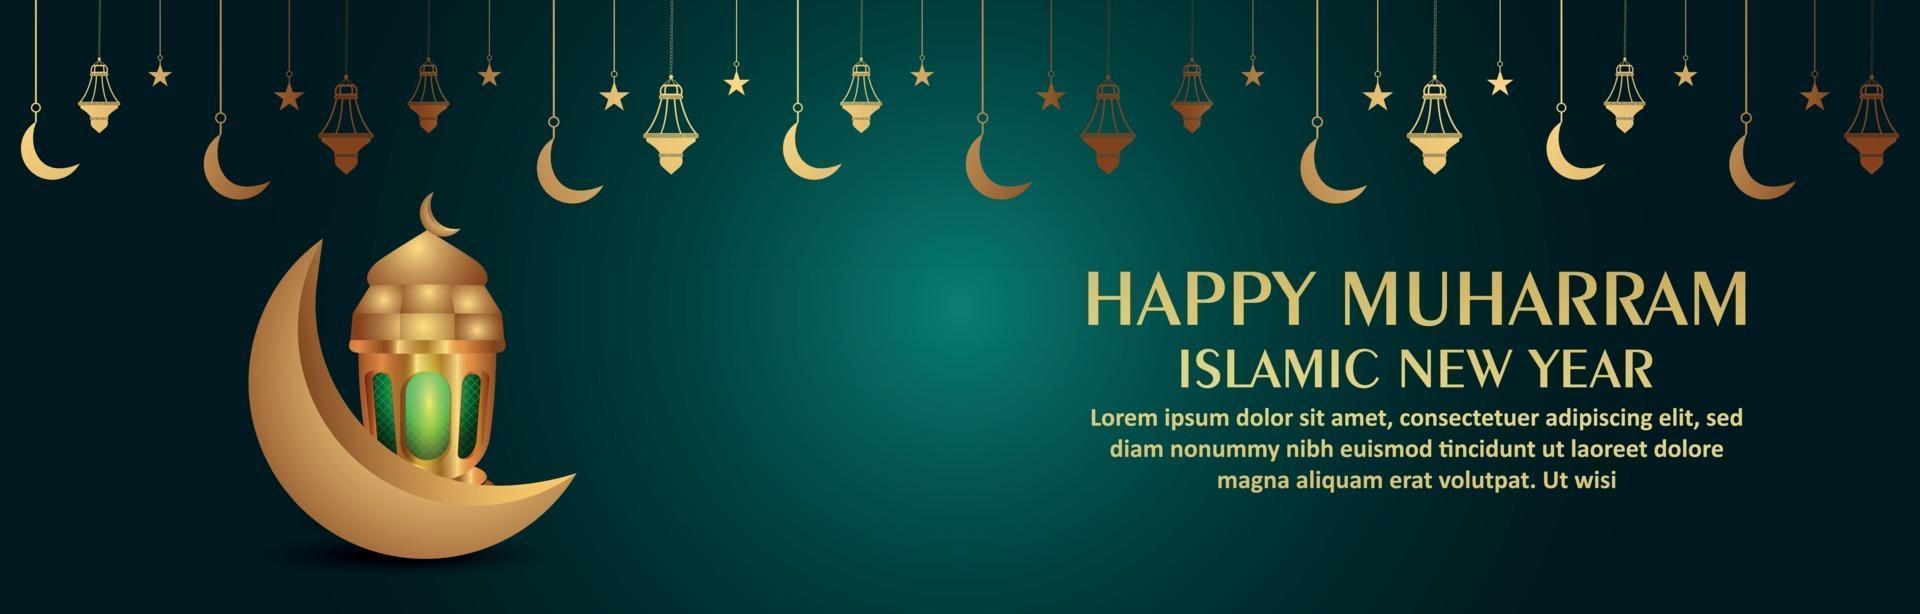 lyckligt muharram realistiskt islamiskt nytt år med vektorillustrationlykta och måne vektor